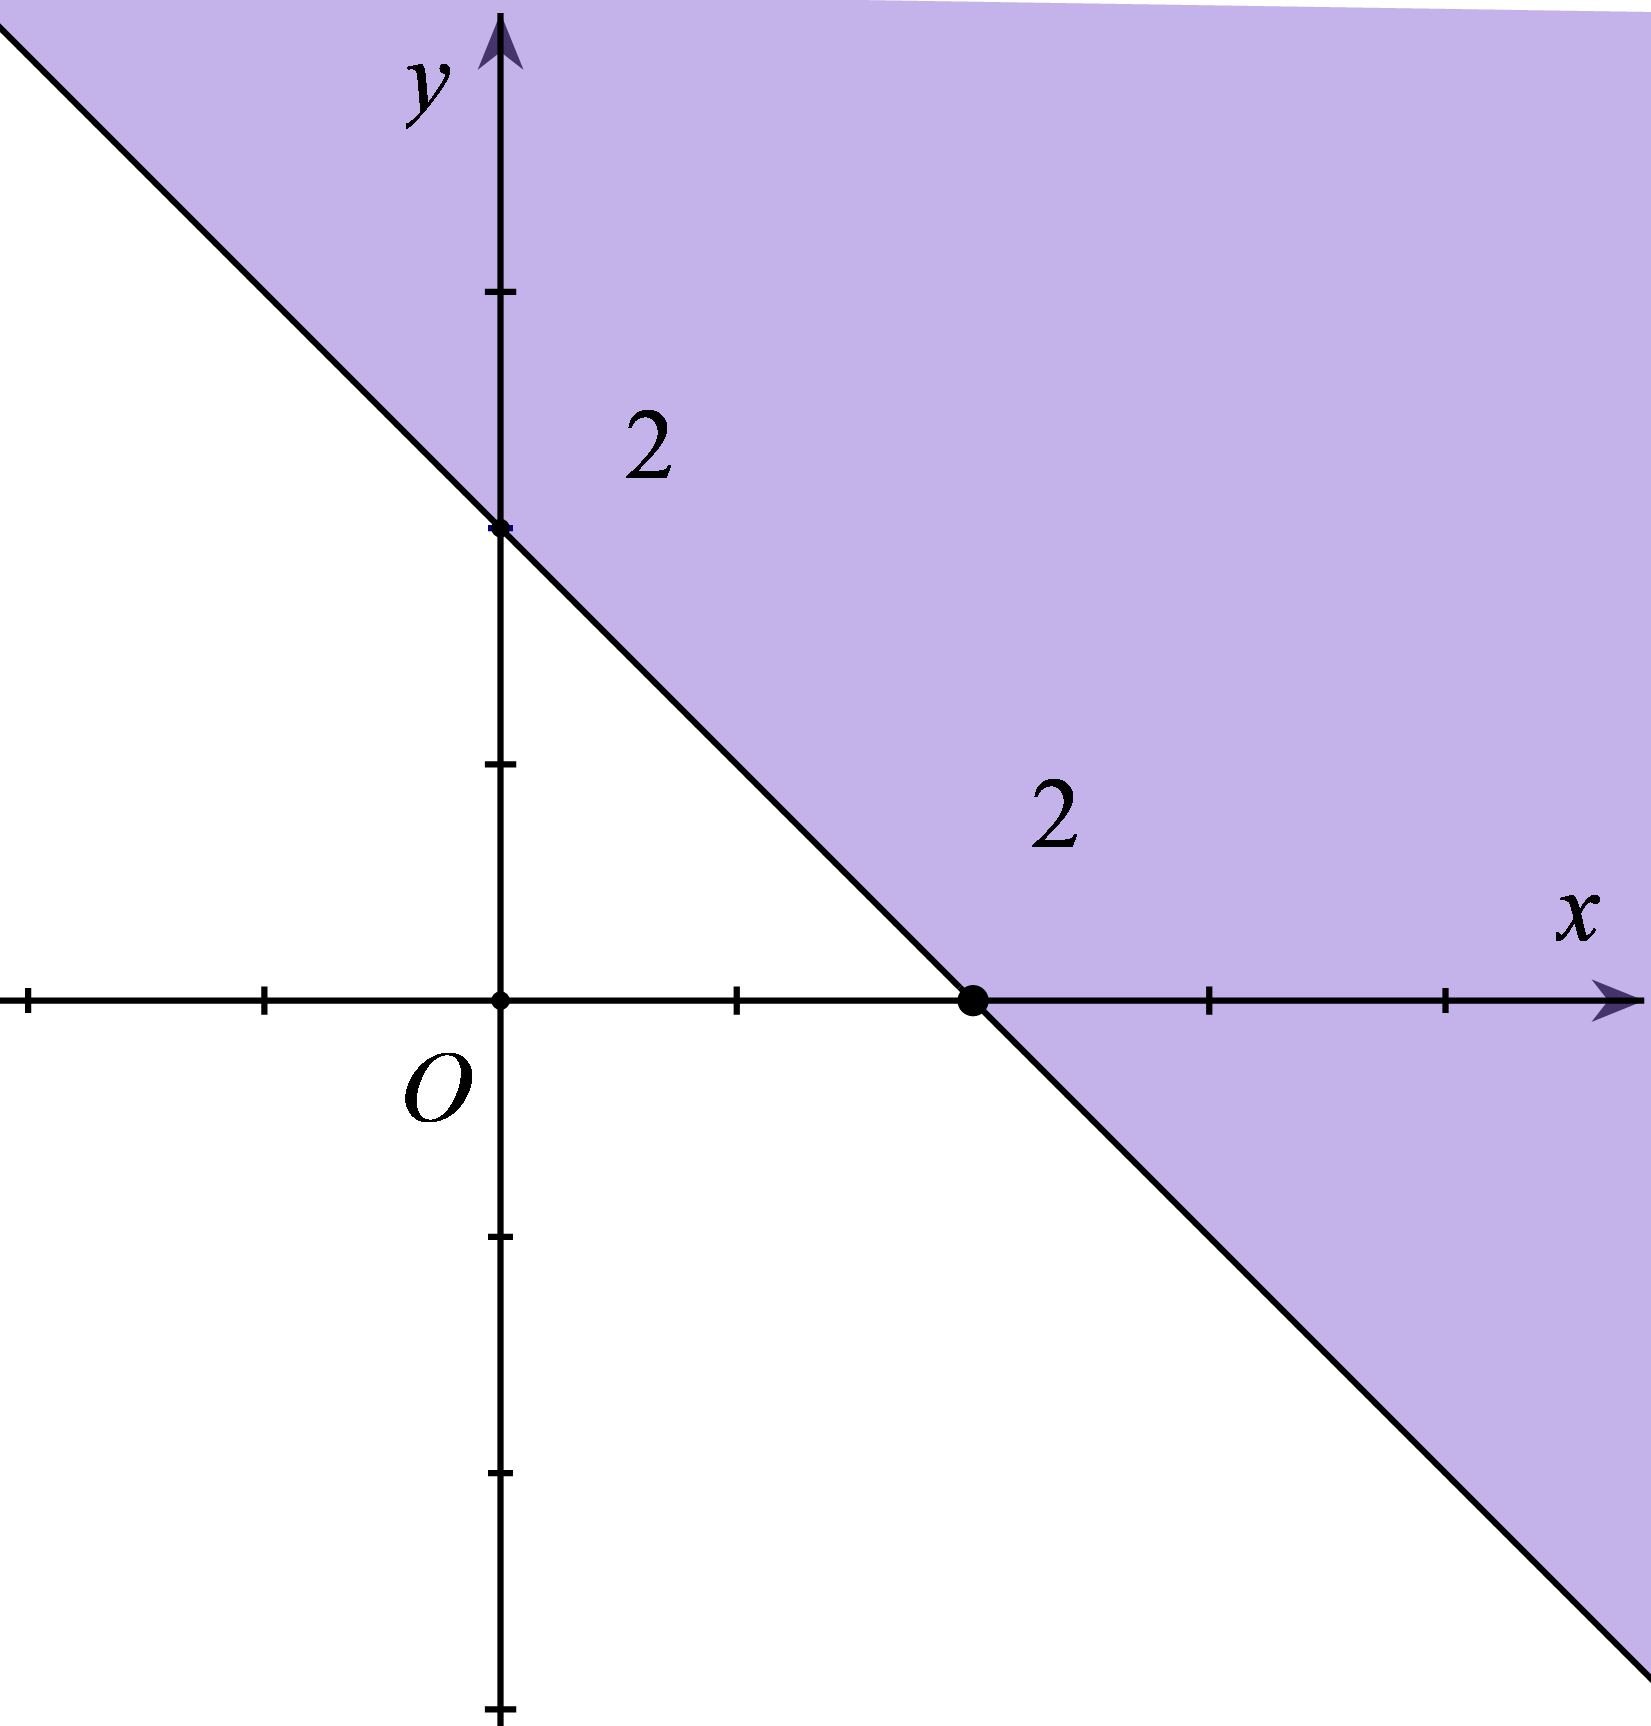 Miền nghiệm của bất phương trình x + y ≤ 2 là phần tô đậm trong hình vẽ của hình (ảnh 2)